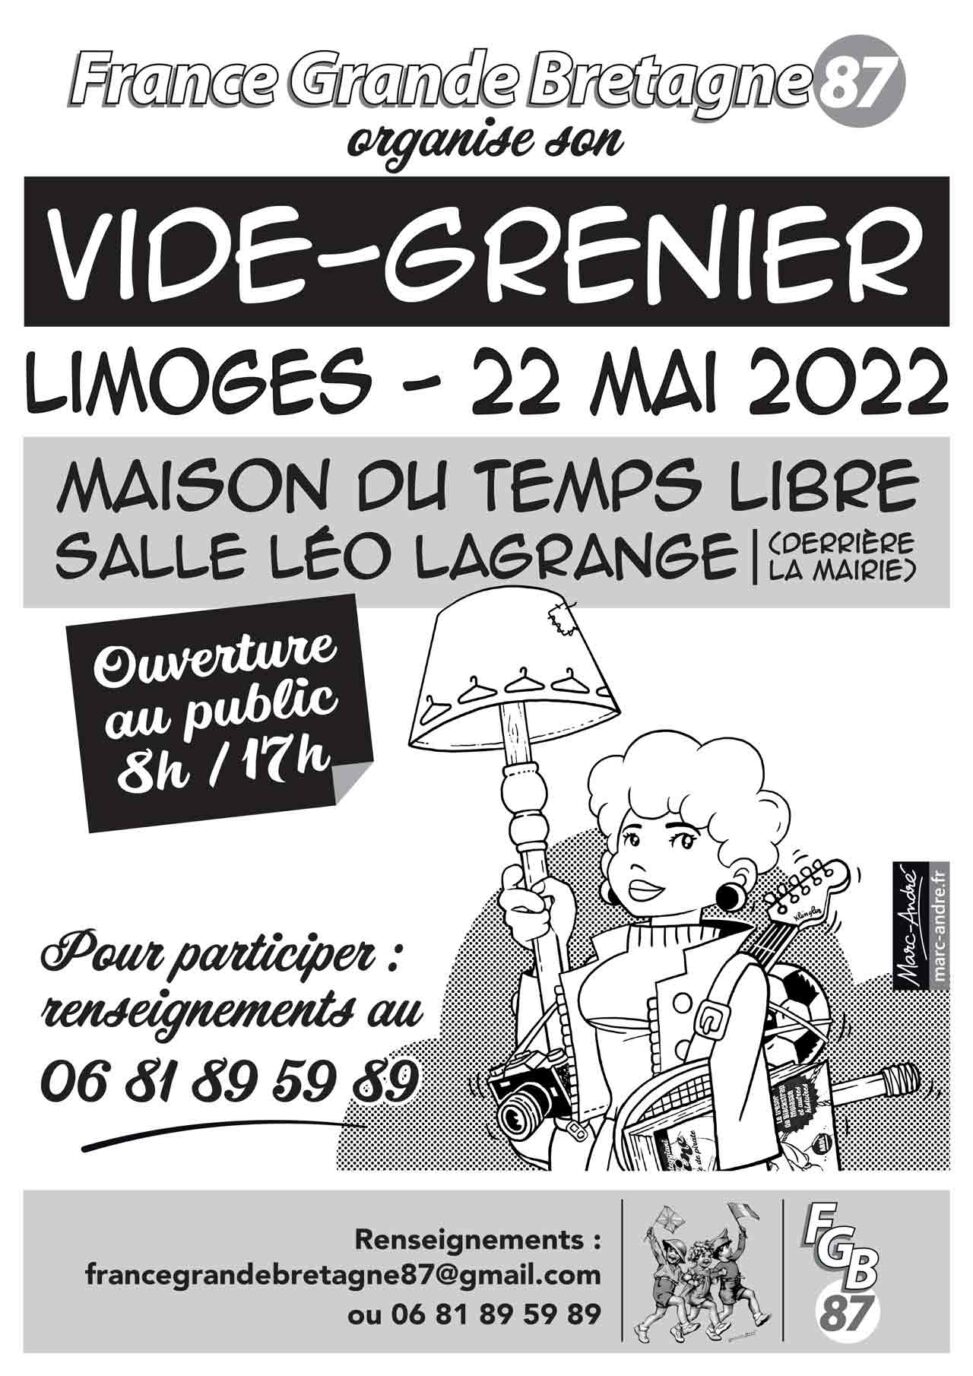 France Grande Bretagne 87 -Vide-grenier 22 mai 2022 - Marc-André BD Illustration Graphisme Limoges